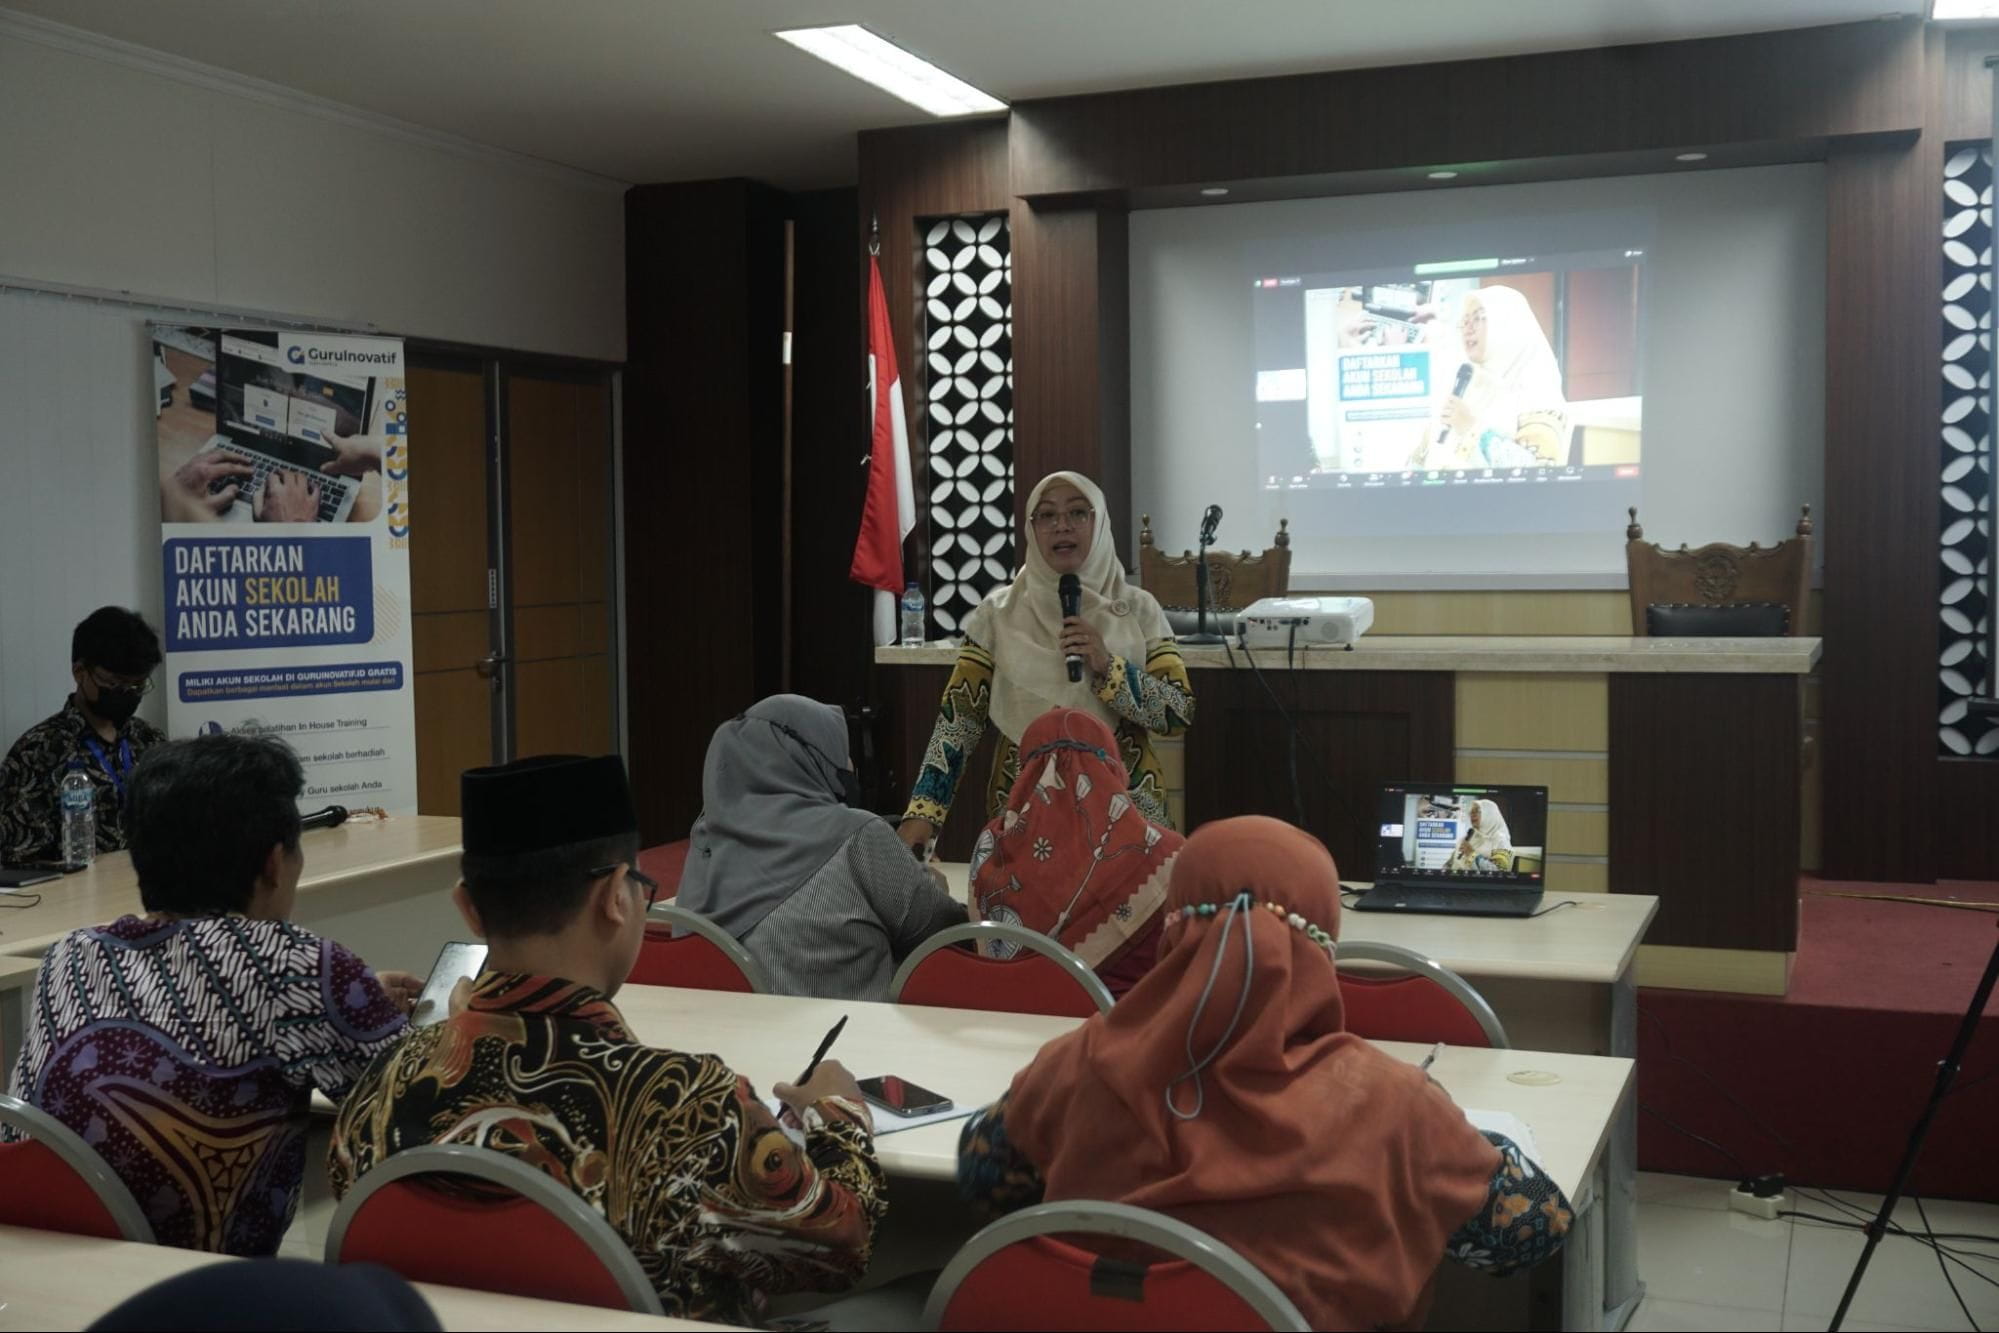 Guruinovatif.id Sukses Selenggarakan Workshop Implementasi Kurikulum Merdeka bersama Universitas Nahdlatul Ulama Yogyakarta